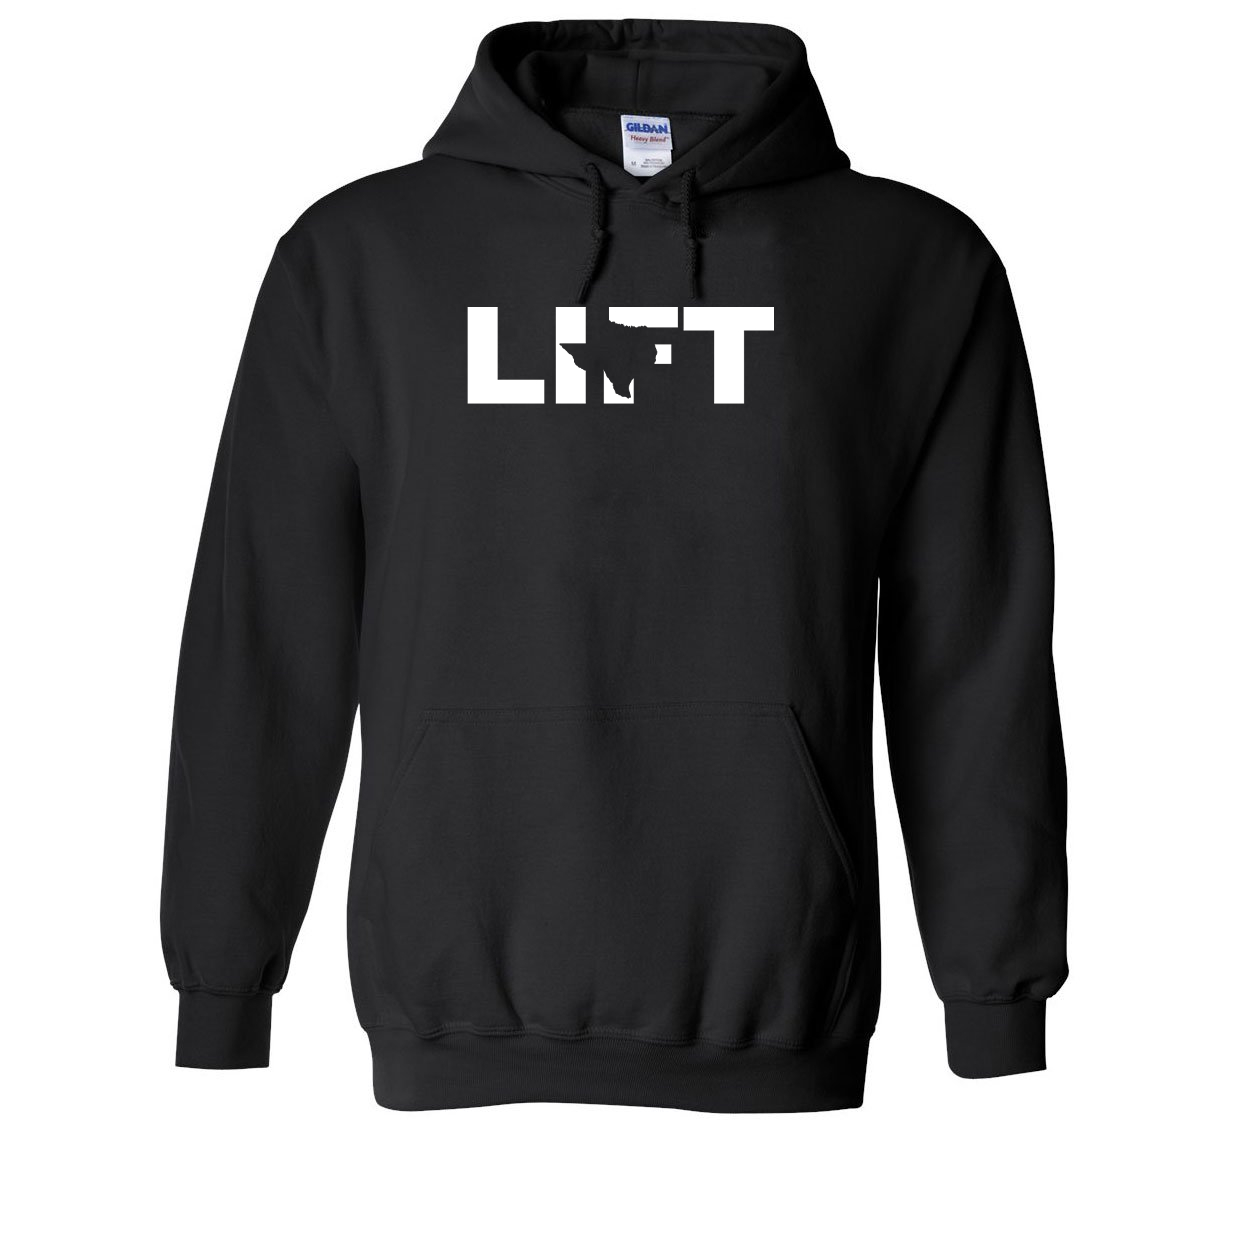 Lift Texas Classic Sweatshirt Black (White Logo)